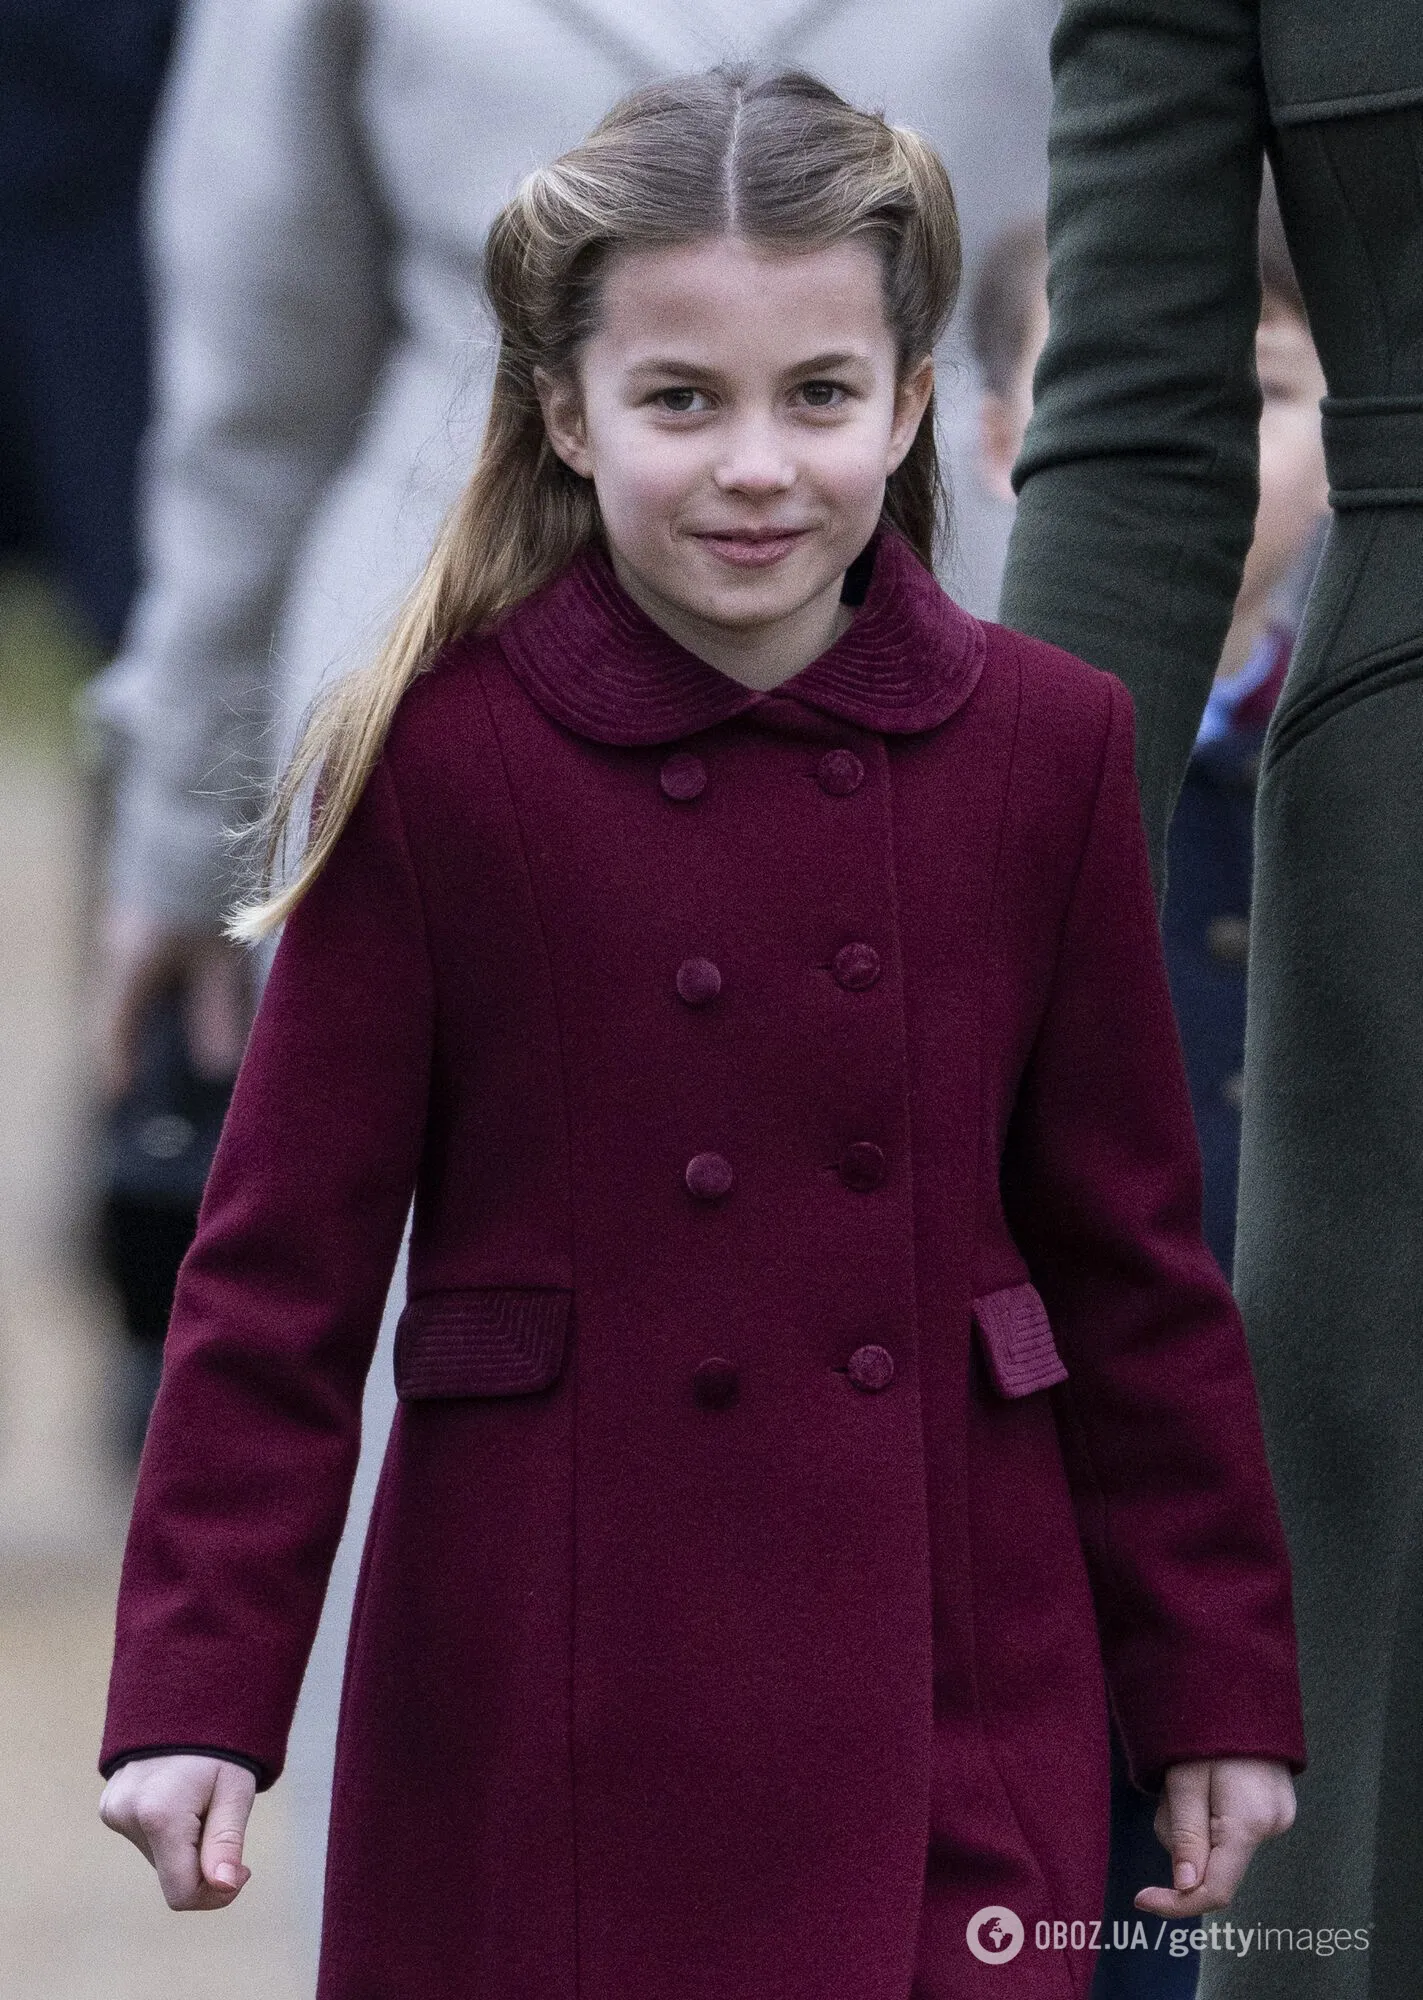 8-річна принцеса Шарлотта – найбагатша дитина у світі: хто ще є в списку "маленьких багатіїв" й у скільки оцінюють їхні статки